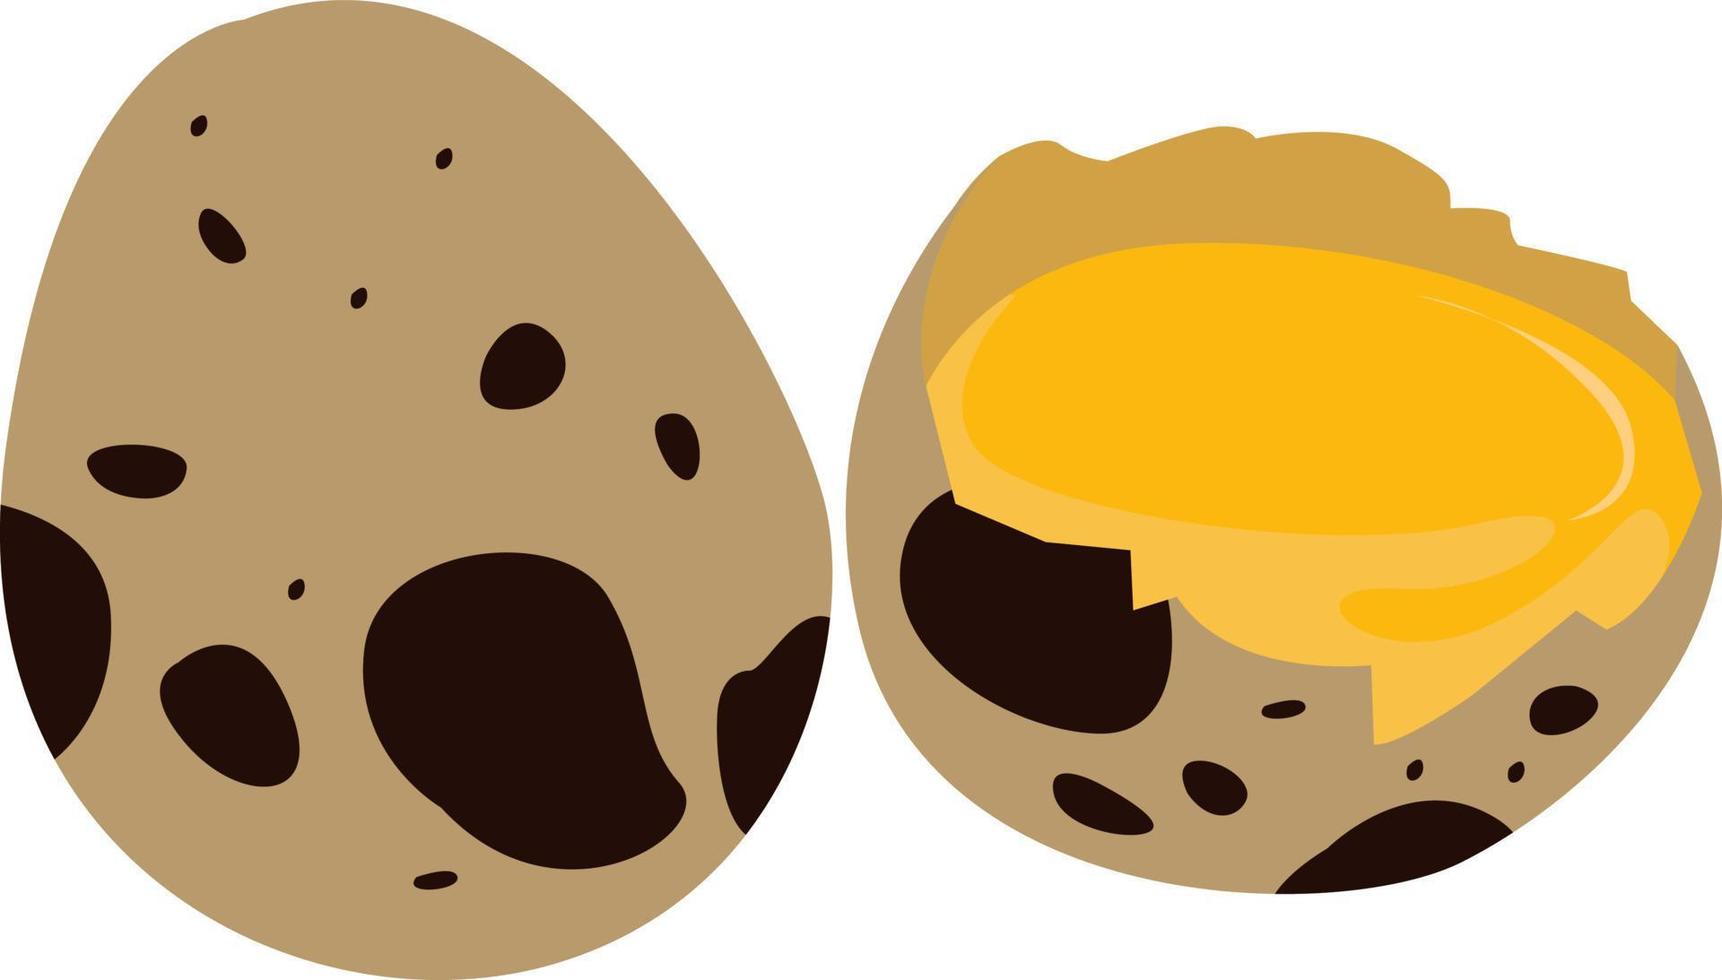 Broken egg, illustration, vector on white background.